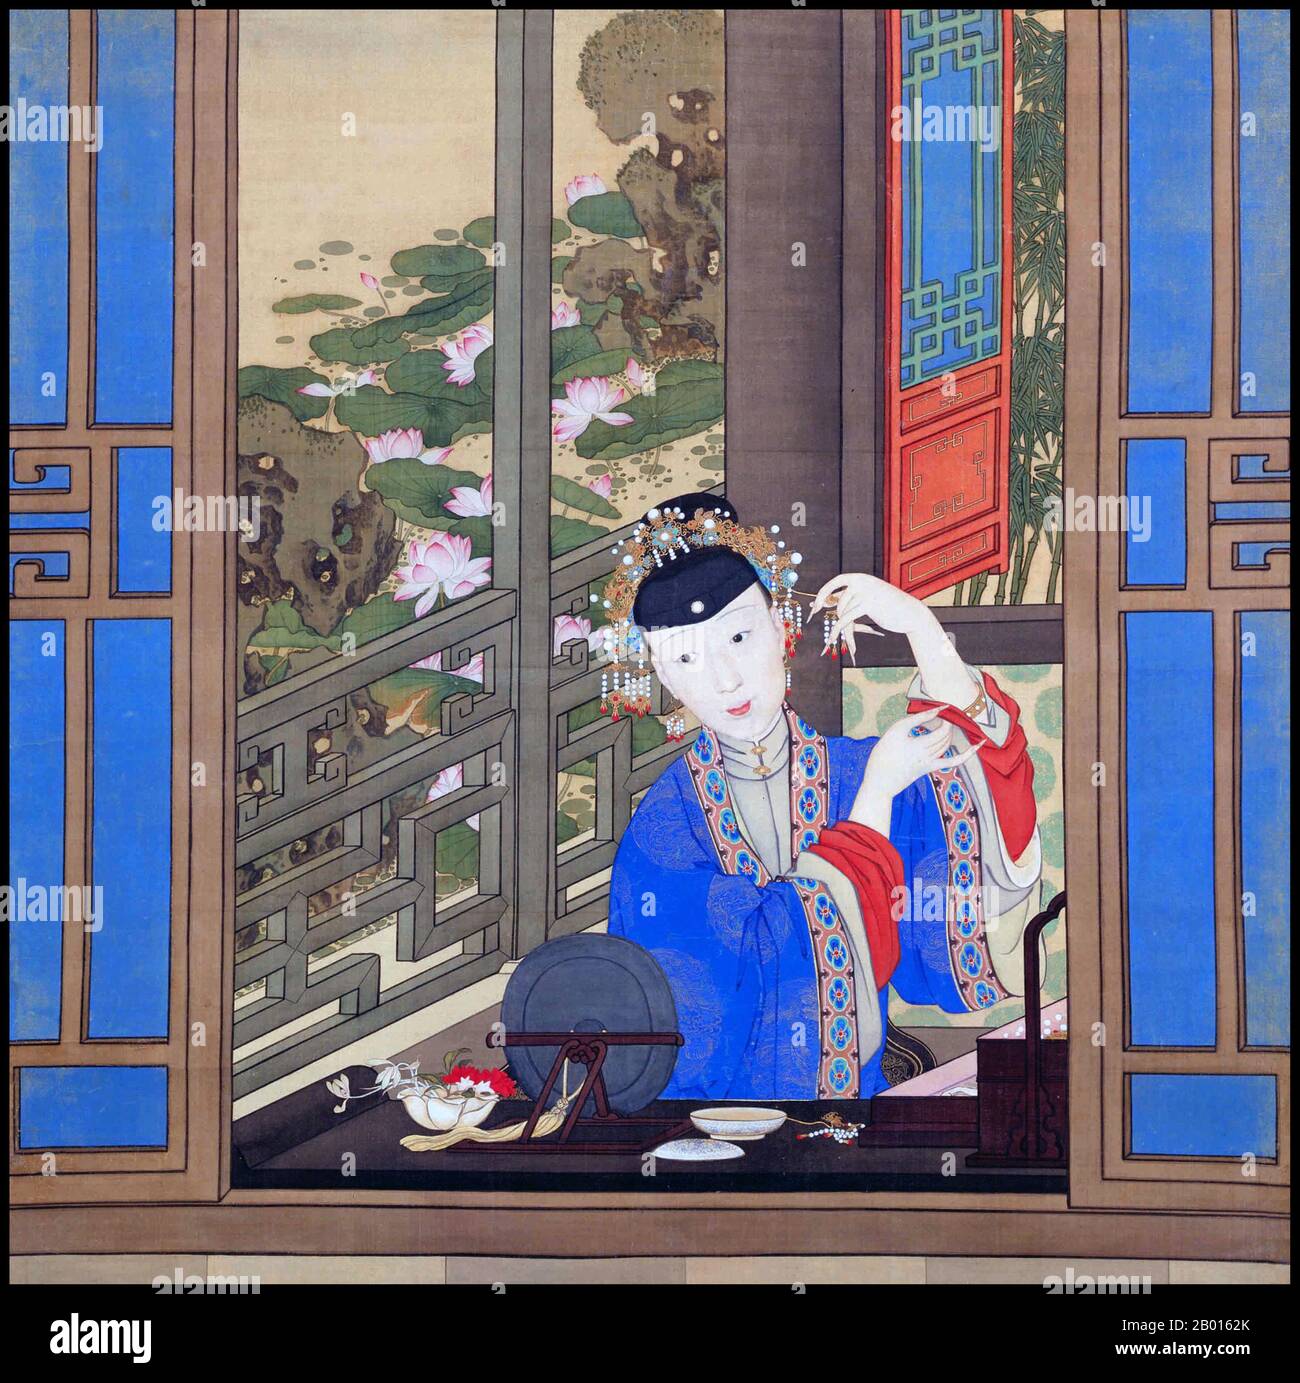 Cina: 'La concubina imperiale' (probabilmente Lady Fuca) dell'imperatore Qianlong. Pittura a spirale sospesa, c.. 1750. L'imperatore Qianlong (25 settembre 1711 - 7 febbraio 1799), nato Hongli e il nome del tempio Gaozong, fu il quinto imperatore della dinastia Qing. Quarto figlio dell'imperatore Yongzheng, regnò ufficialmente dal 1735 al 1796, prima di abdicare a favore di suo figlio, l'imperatore Jiaqing - un atto filiale per non governare più a lungo di suo nonno, l'imperatore Kangxi. Nonostante il suo pensionamento, mantenne il potere ultimo fino alla sua morte. Foto Stock